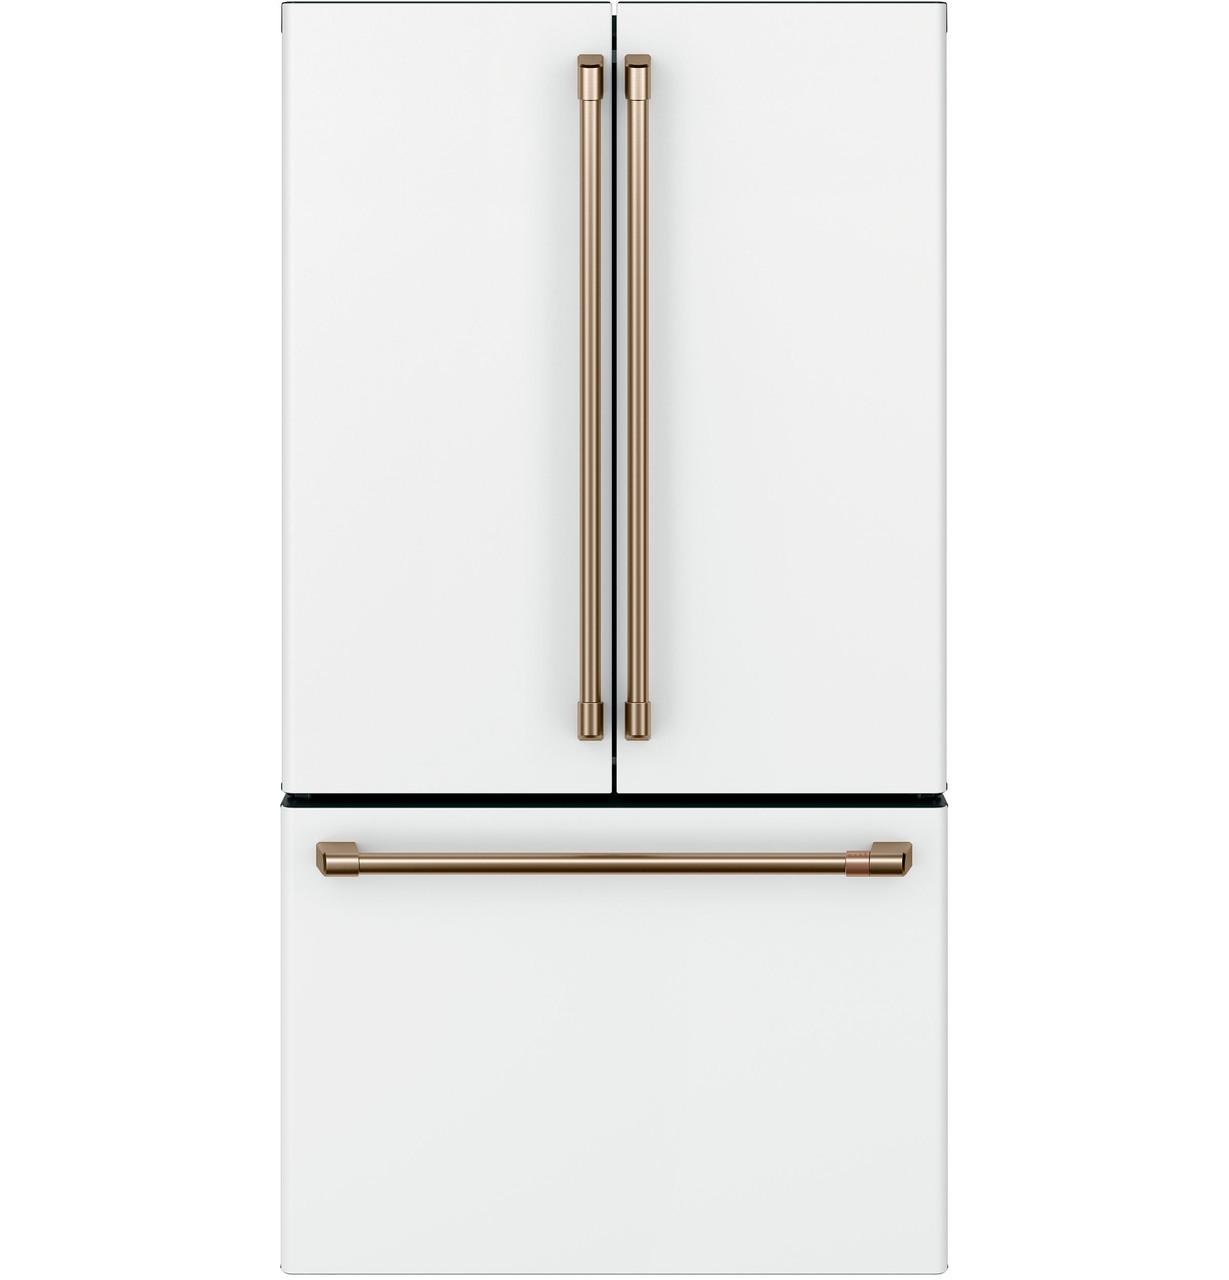 Cafe Caf(eback)™ ENERGY STAR® 23.1 Cu. Ft. Smart Counter-Depth French-Door Refrigerator